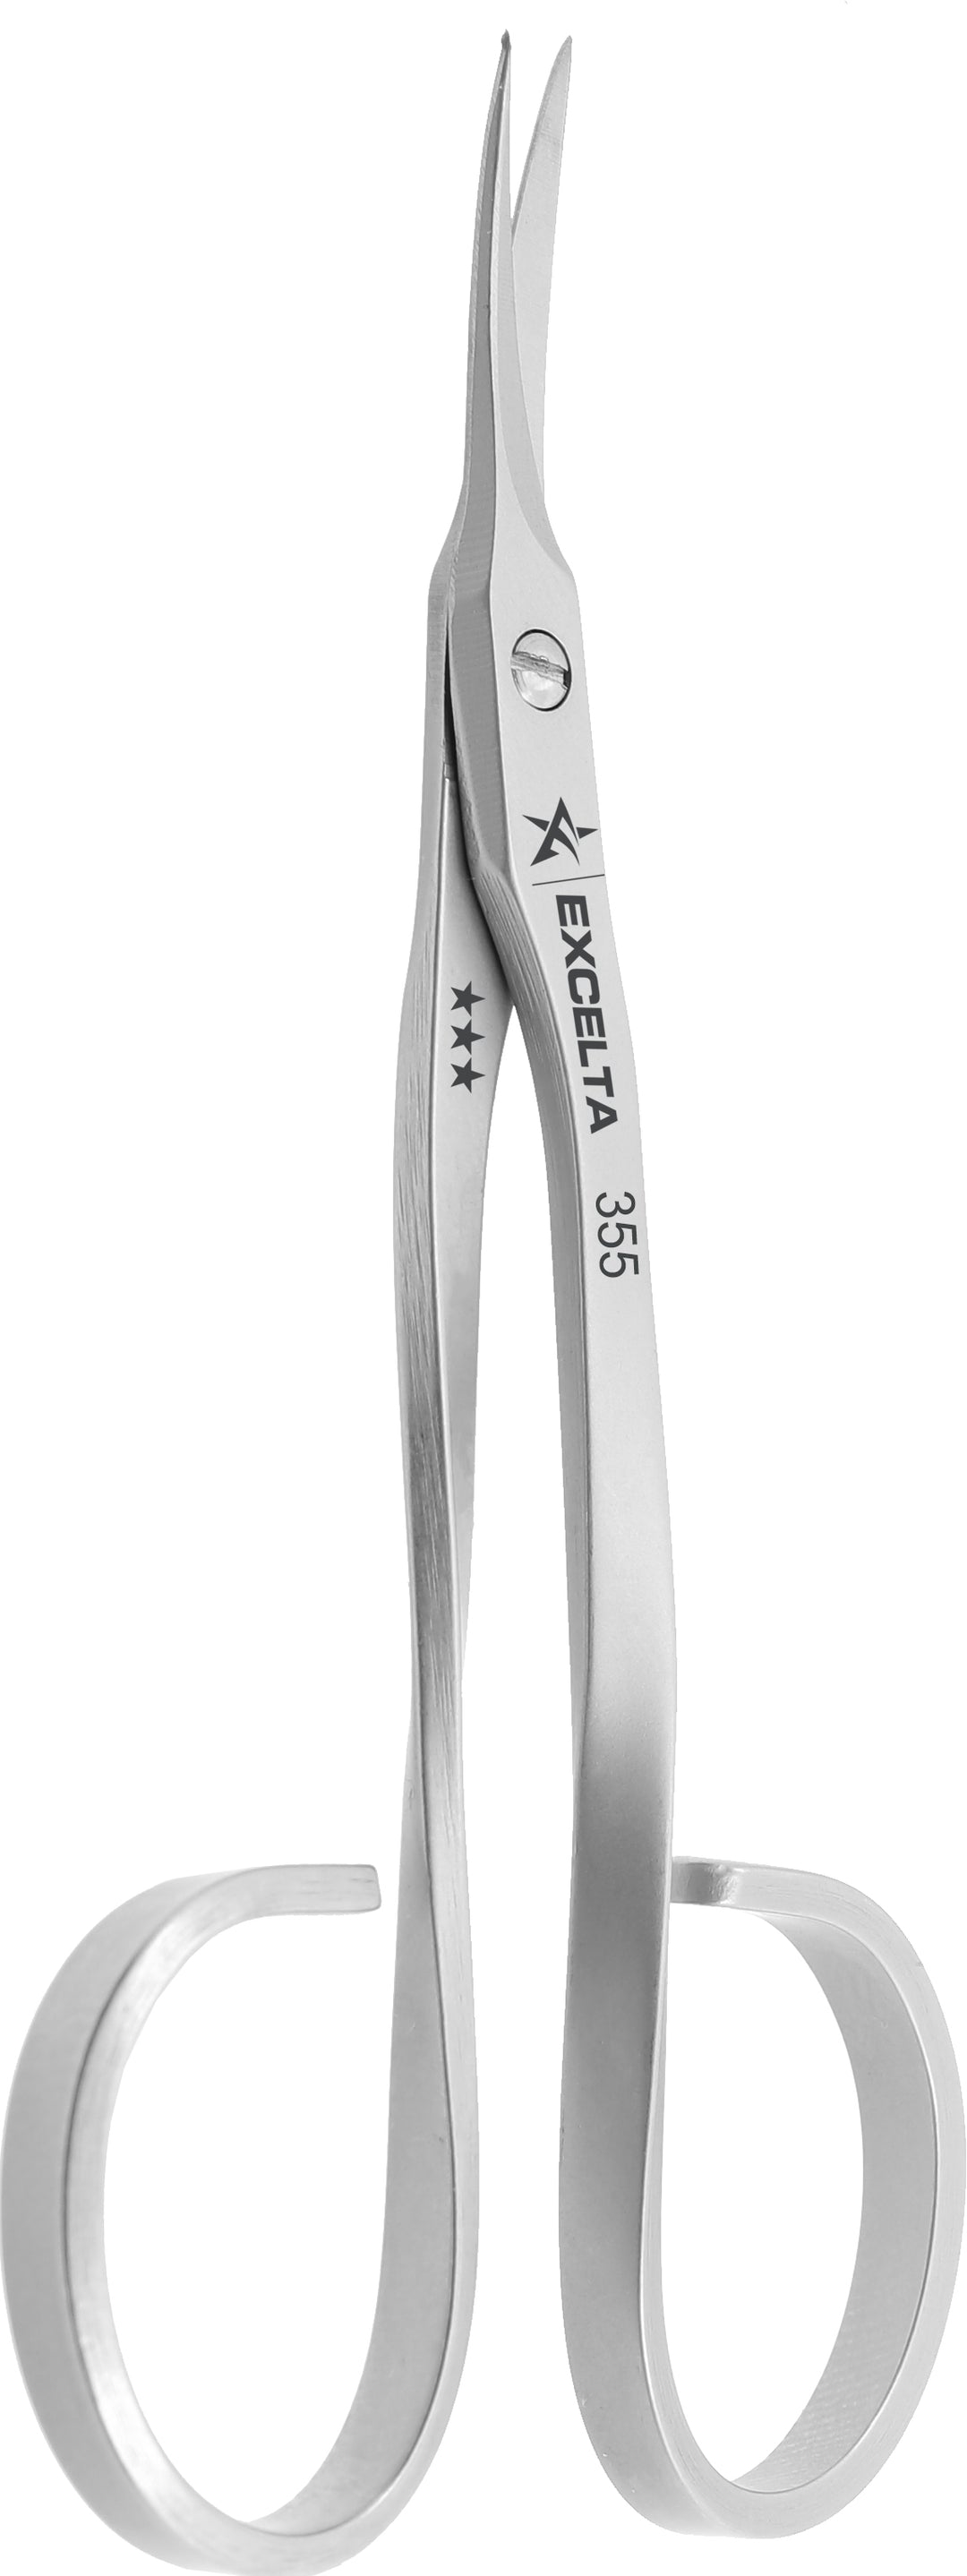 Excelta 355 Scissors - Medical Grade - Extra Fine .885" Blade - SS